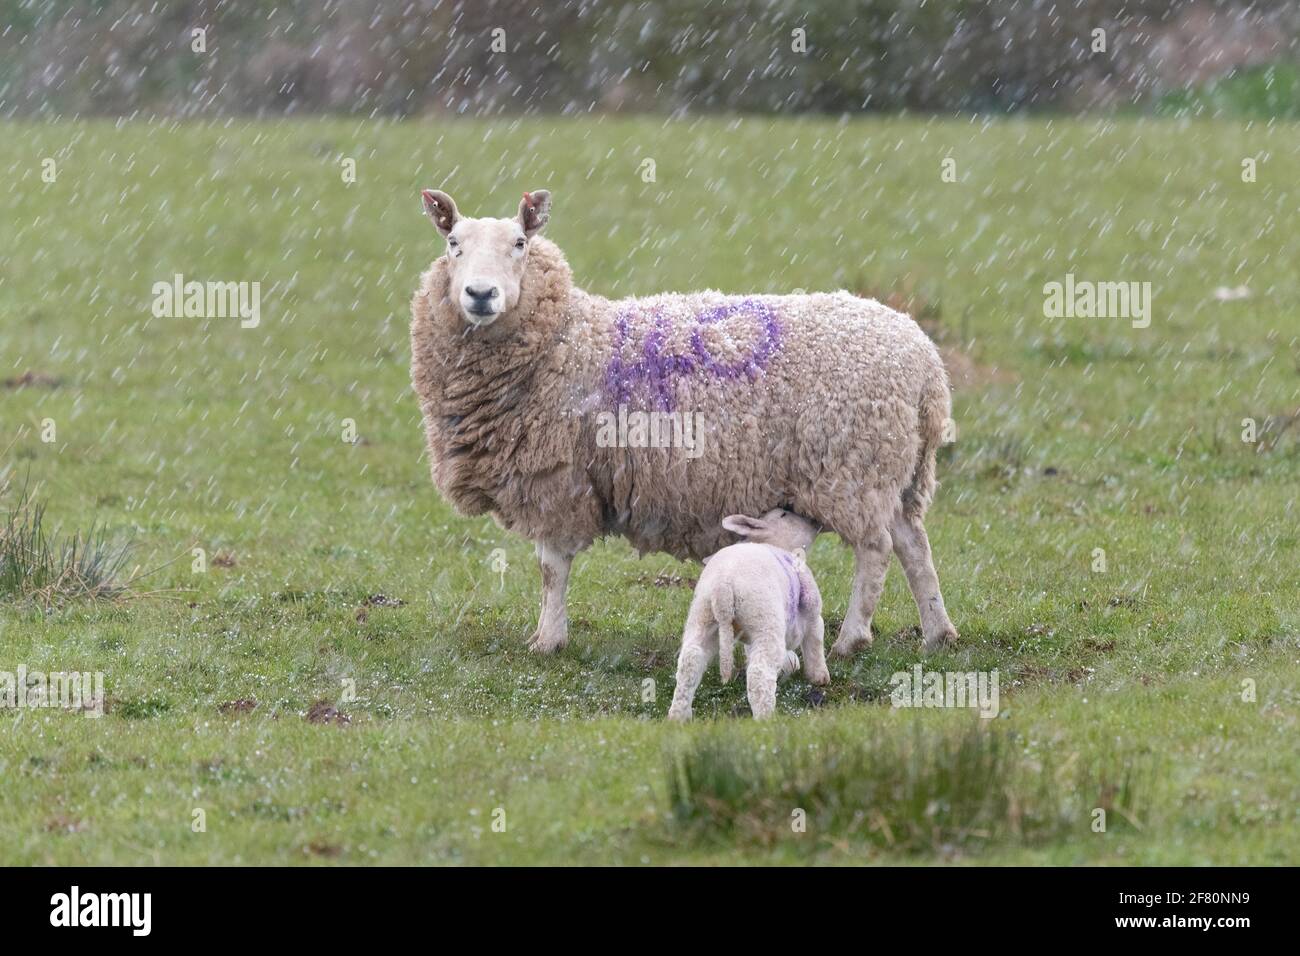 Gartness, Stirling, Scozia, Regno Unito. 10 Apr 2021. UK Weather - una pecora succhia il suo agnello durante una tempesta di grandine nel tardo pomeriggio, con neve e temperature al di sotto delle previsioni di congelamento overnight Credit: Kay Roxby/Alamy Live News Foto Stock